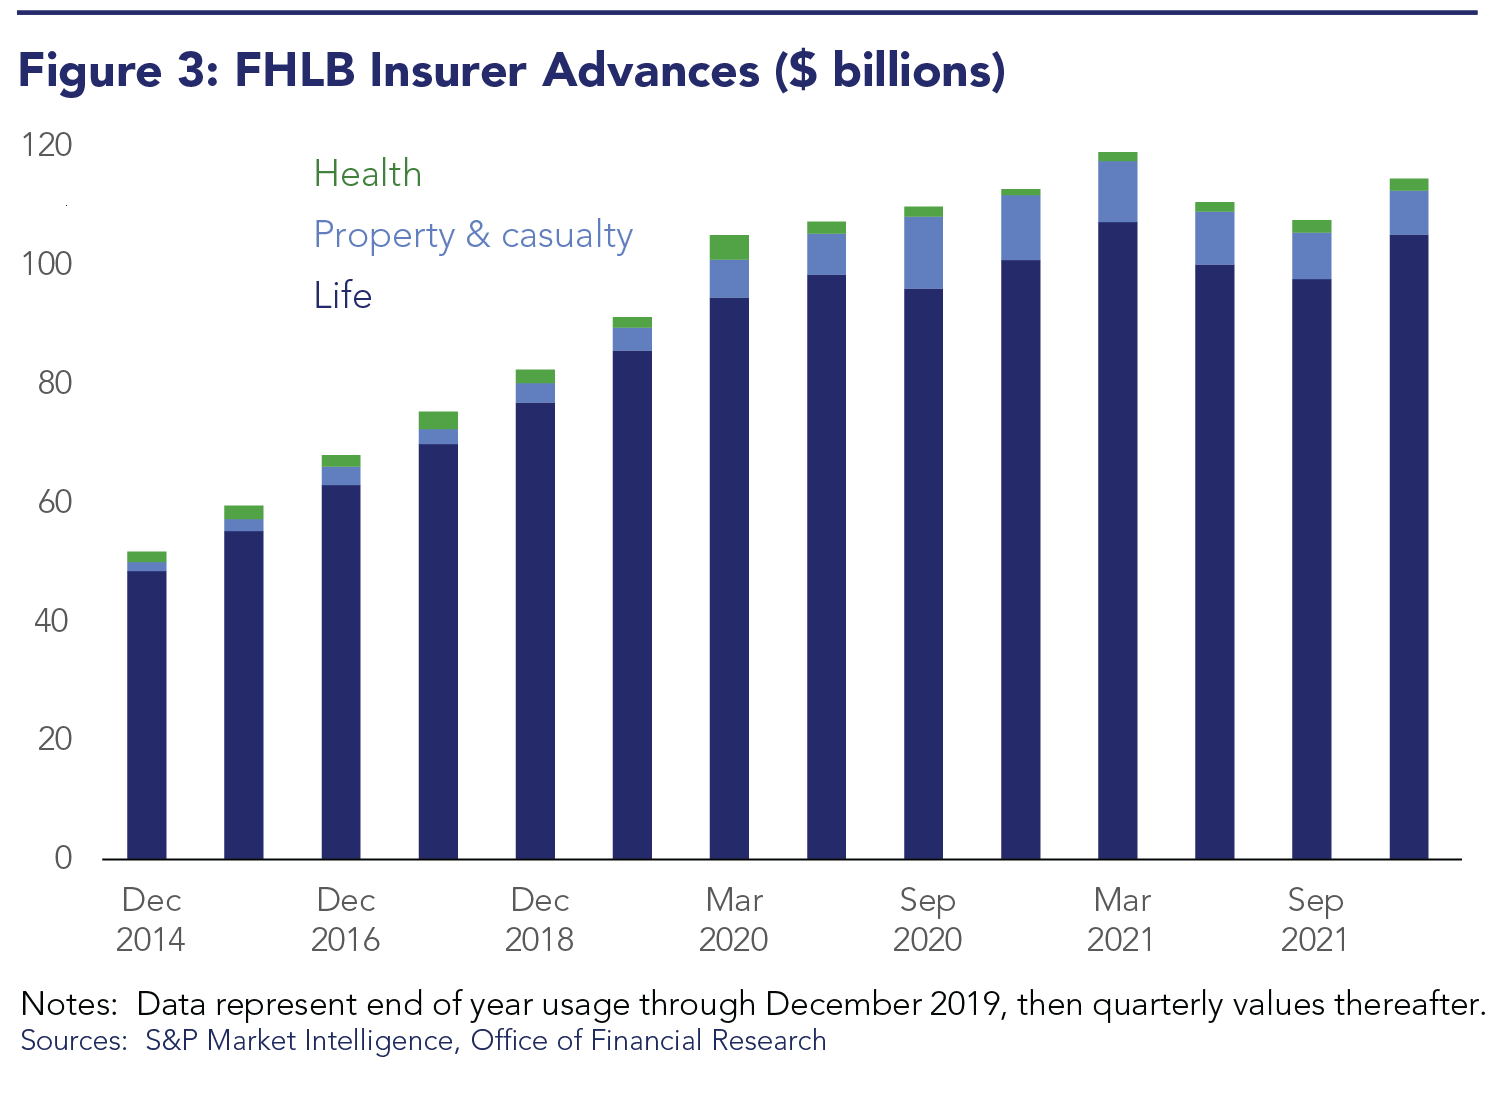 FHLB Insurer Advances ($ billions)